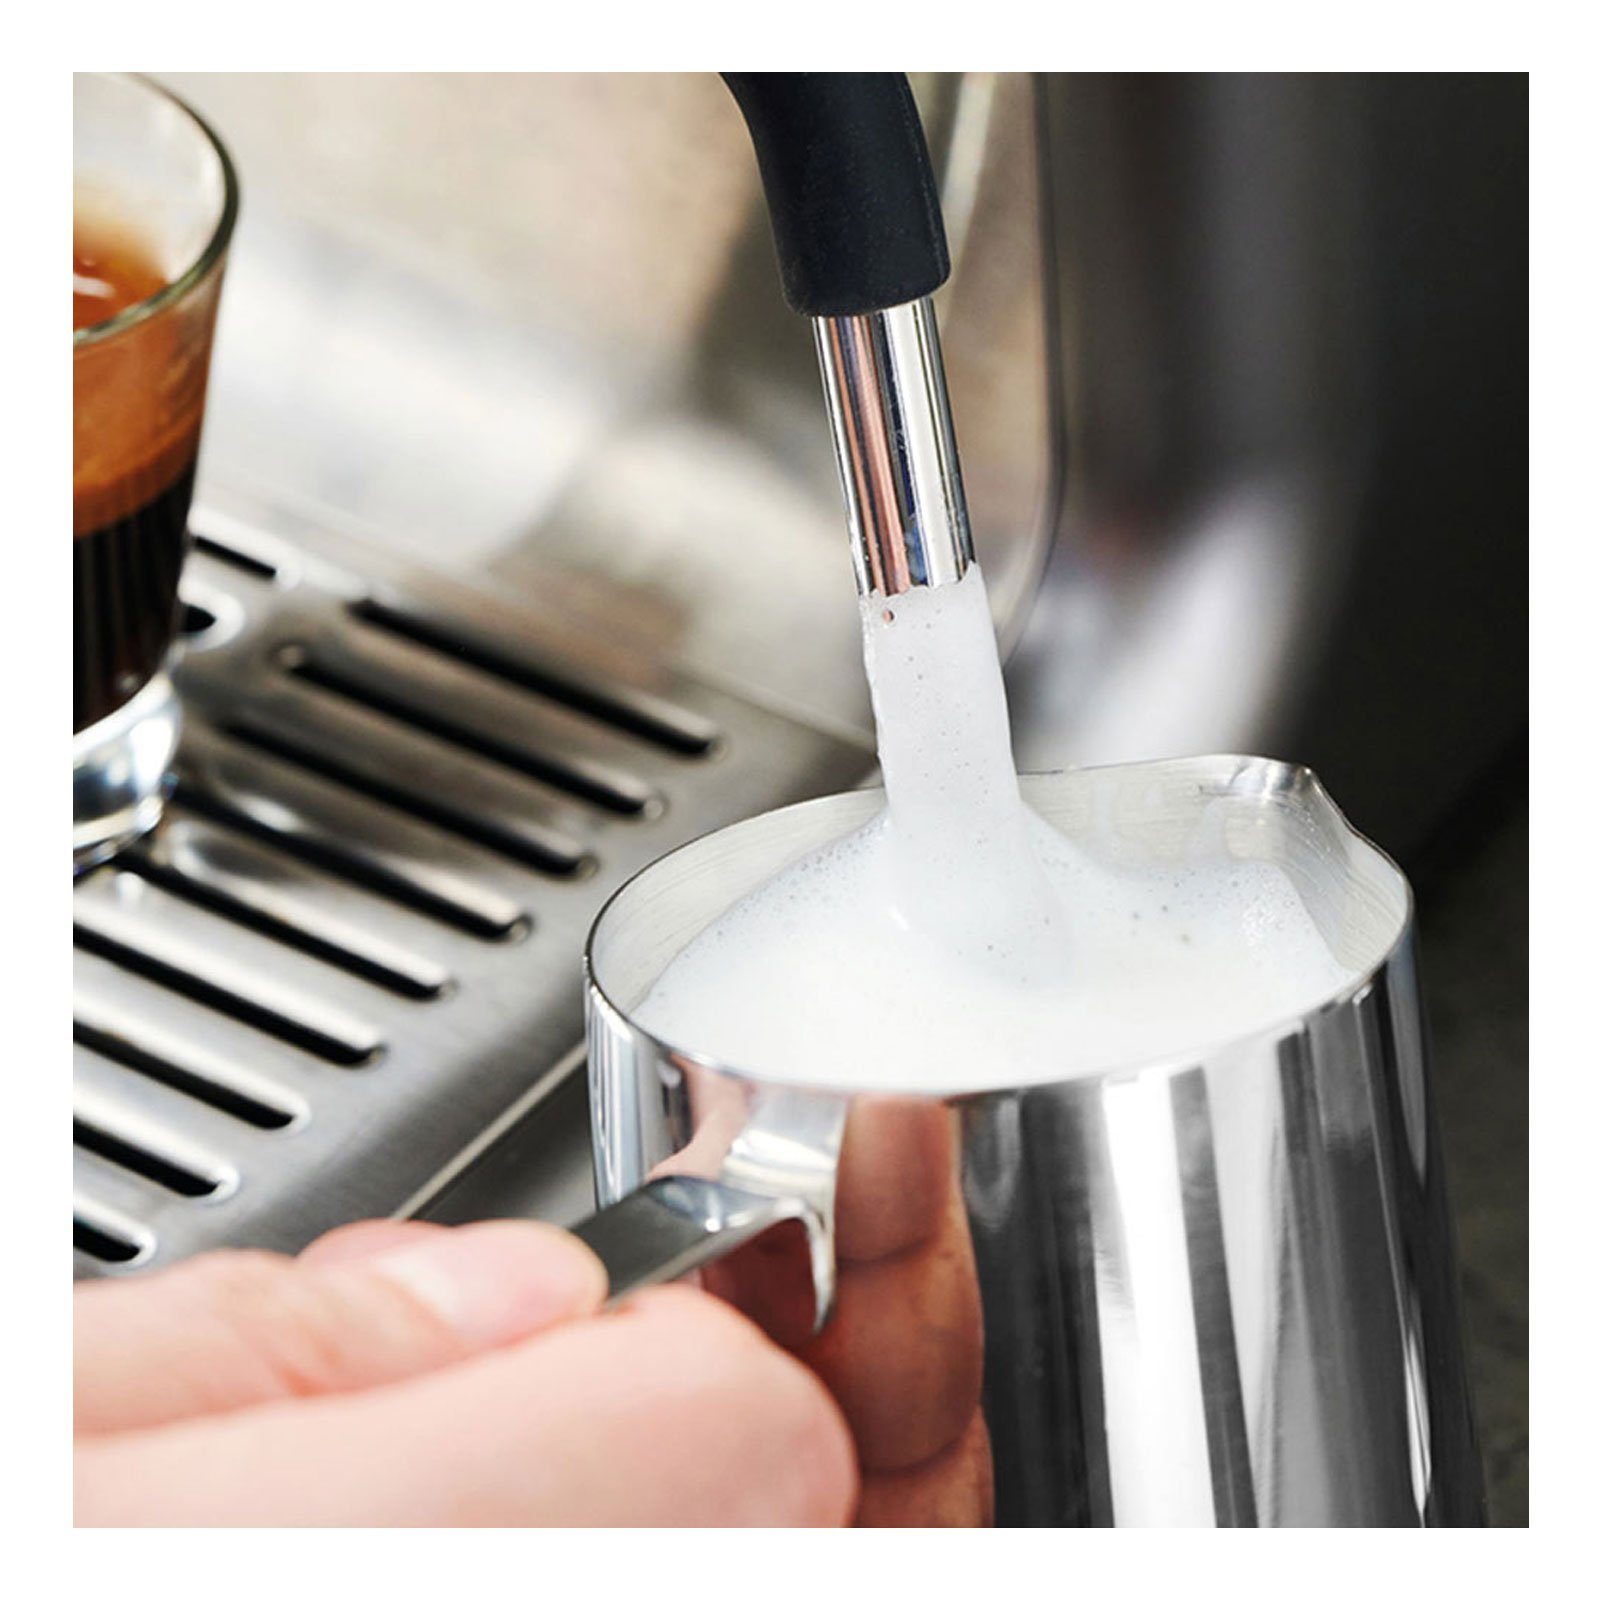 Siebträgermaschine Barista 42616 Gastroback Pro Espresso Design